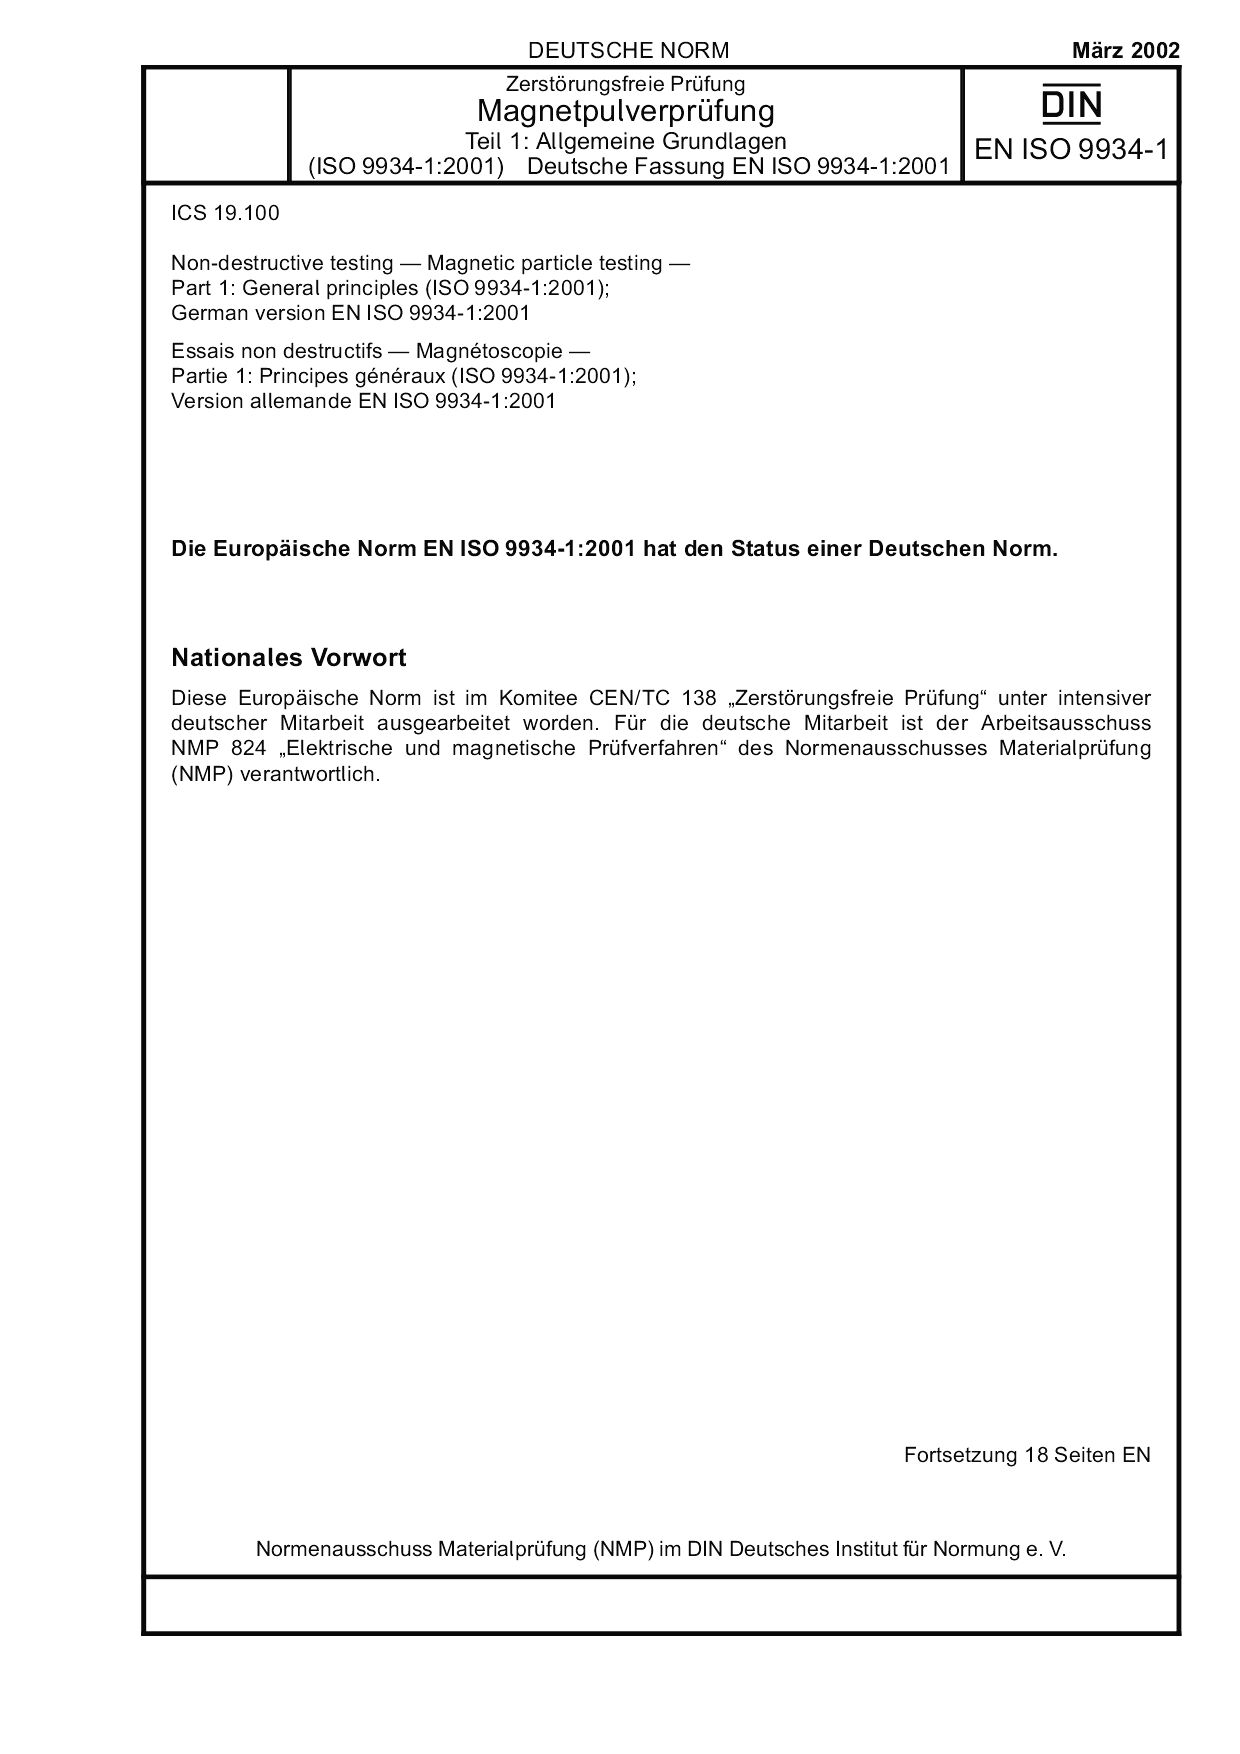 DIN EN ISO 9934-1:2002